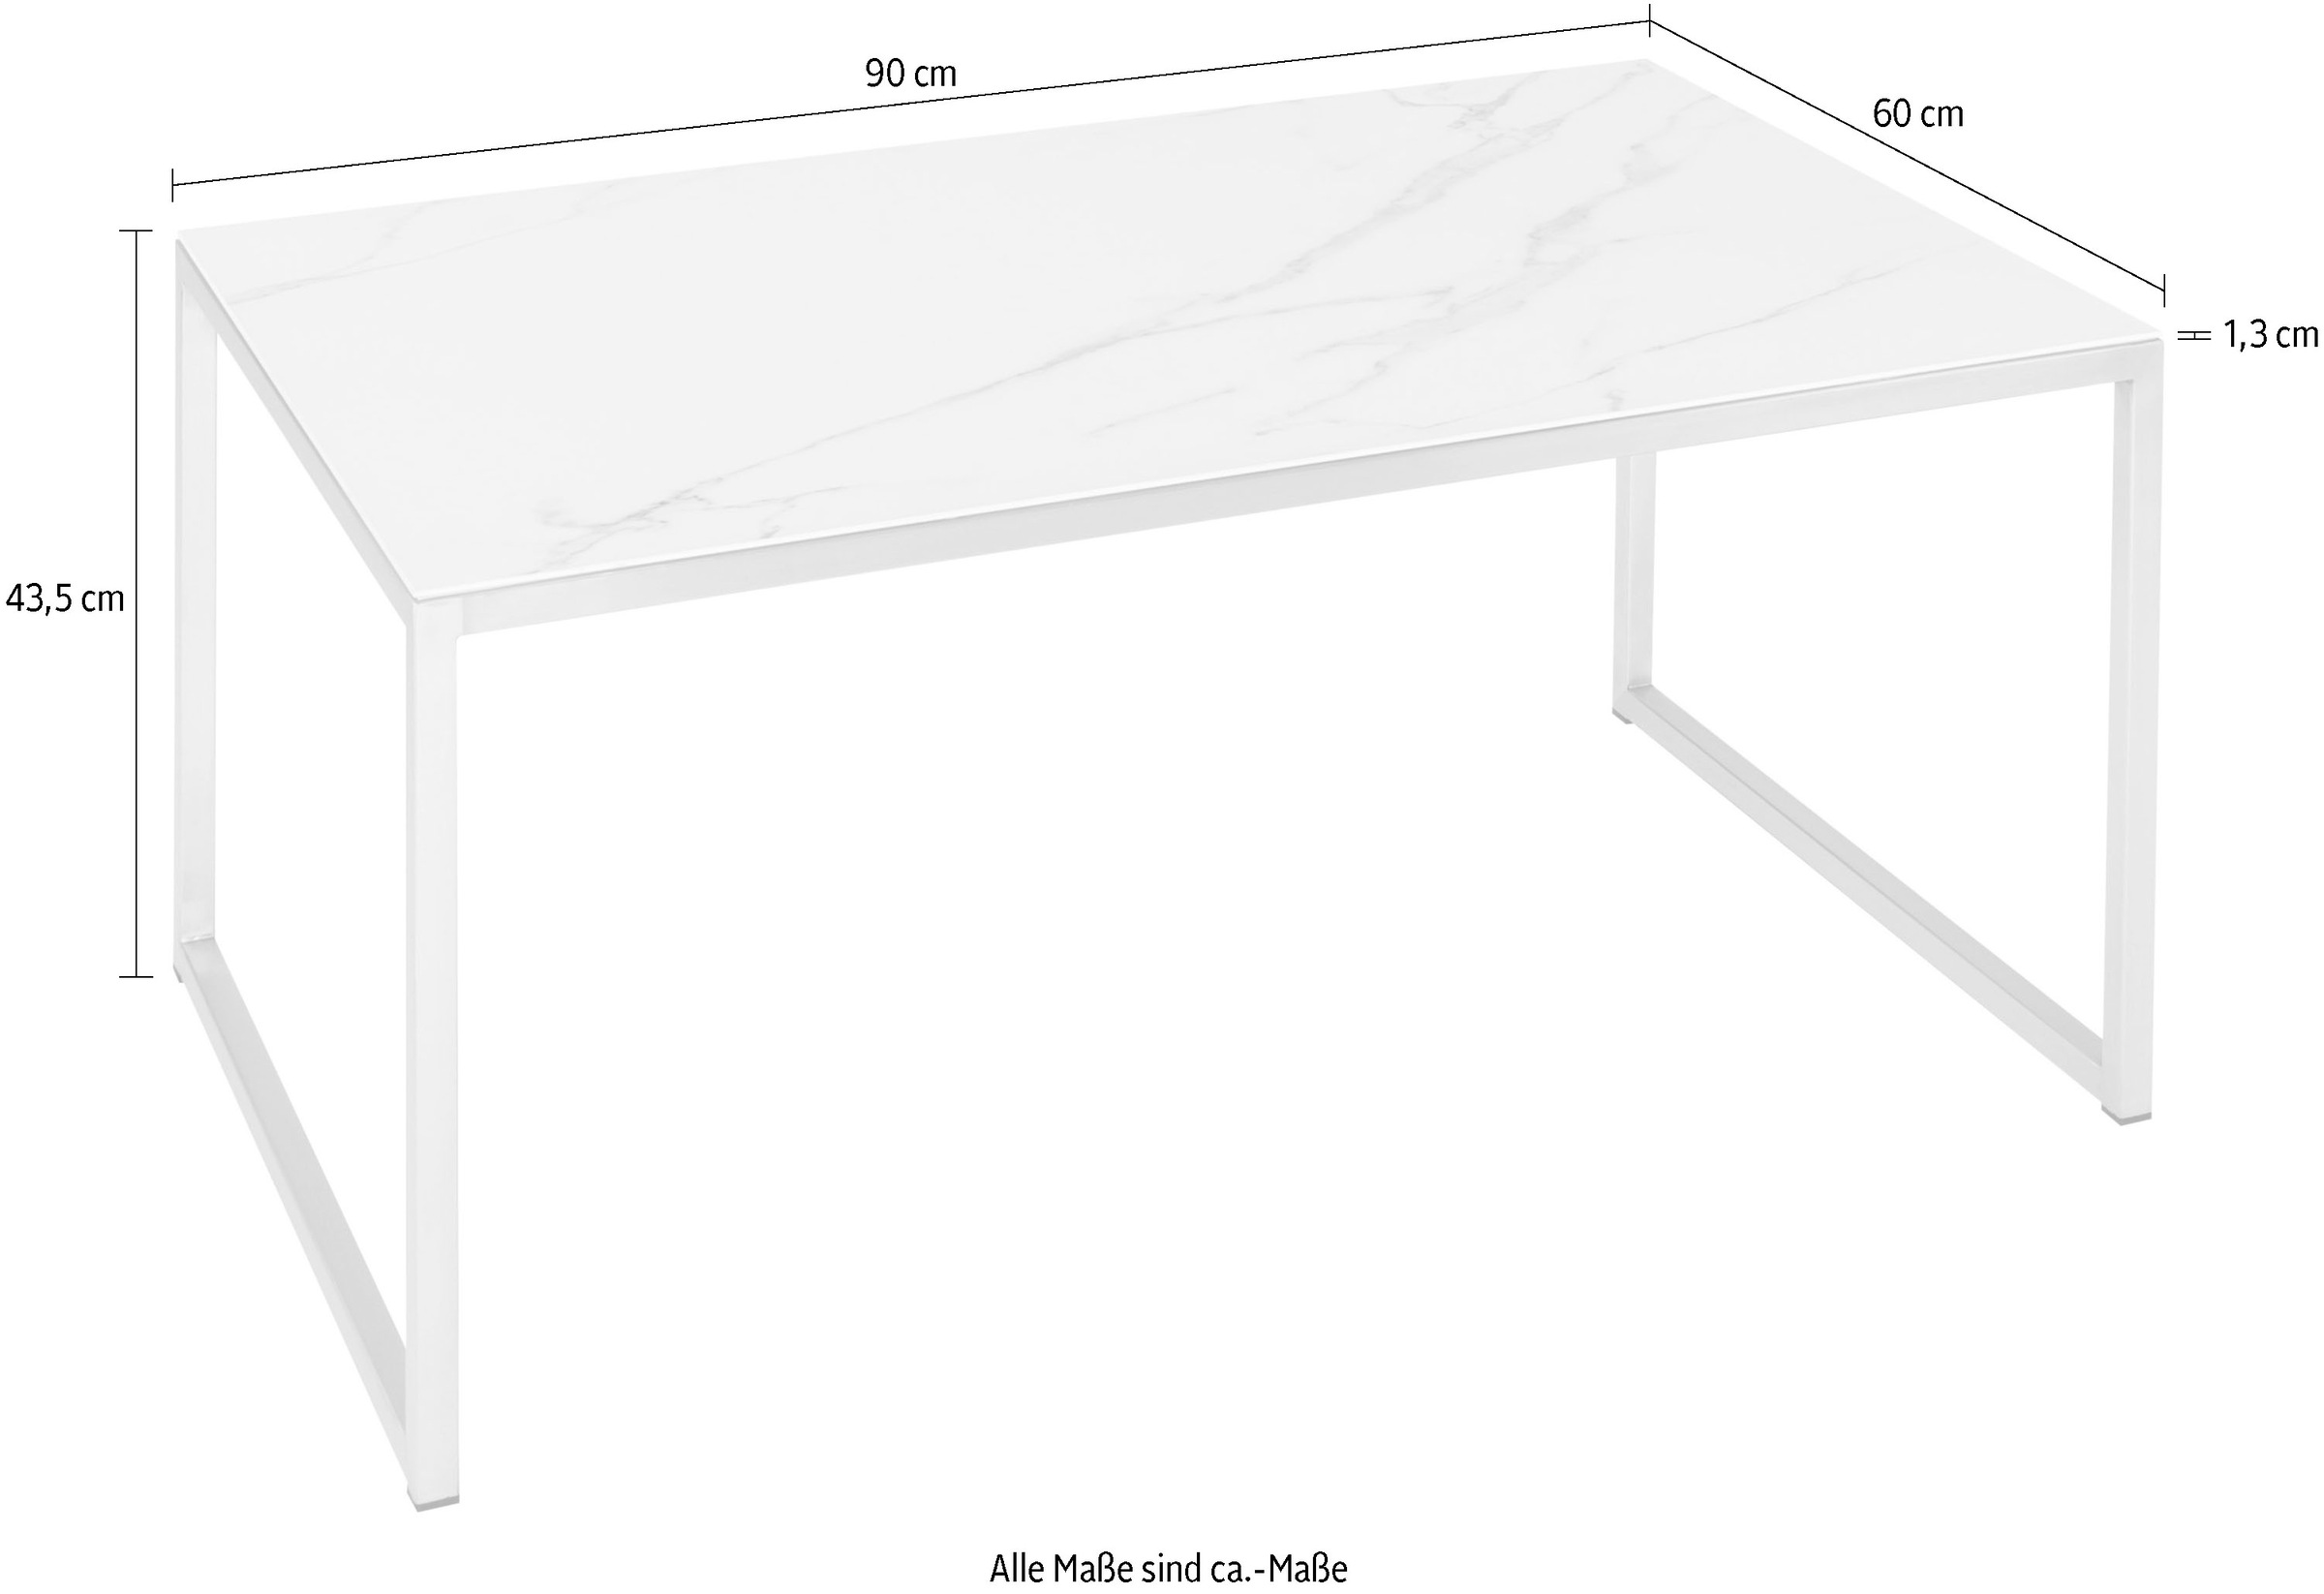 Henke Möbel Couchtisch, aus jeder online Tischplatte Unikat kaufen Tisch in Keramik, der ein Musterung